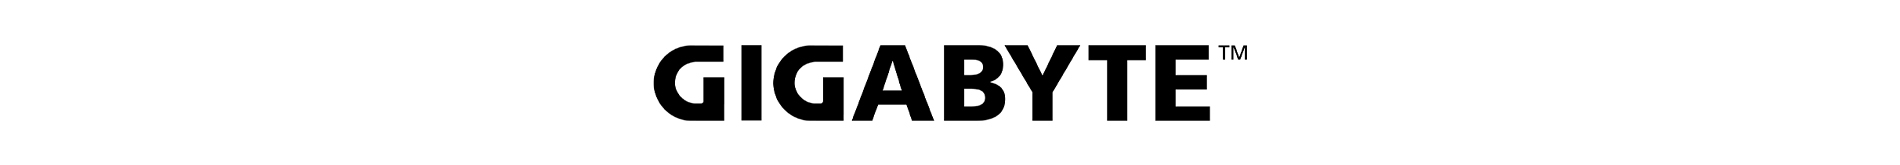 Gigabyte Bundle LP 09.15.gigabyte Logo